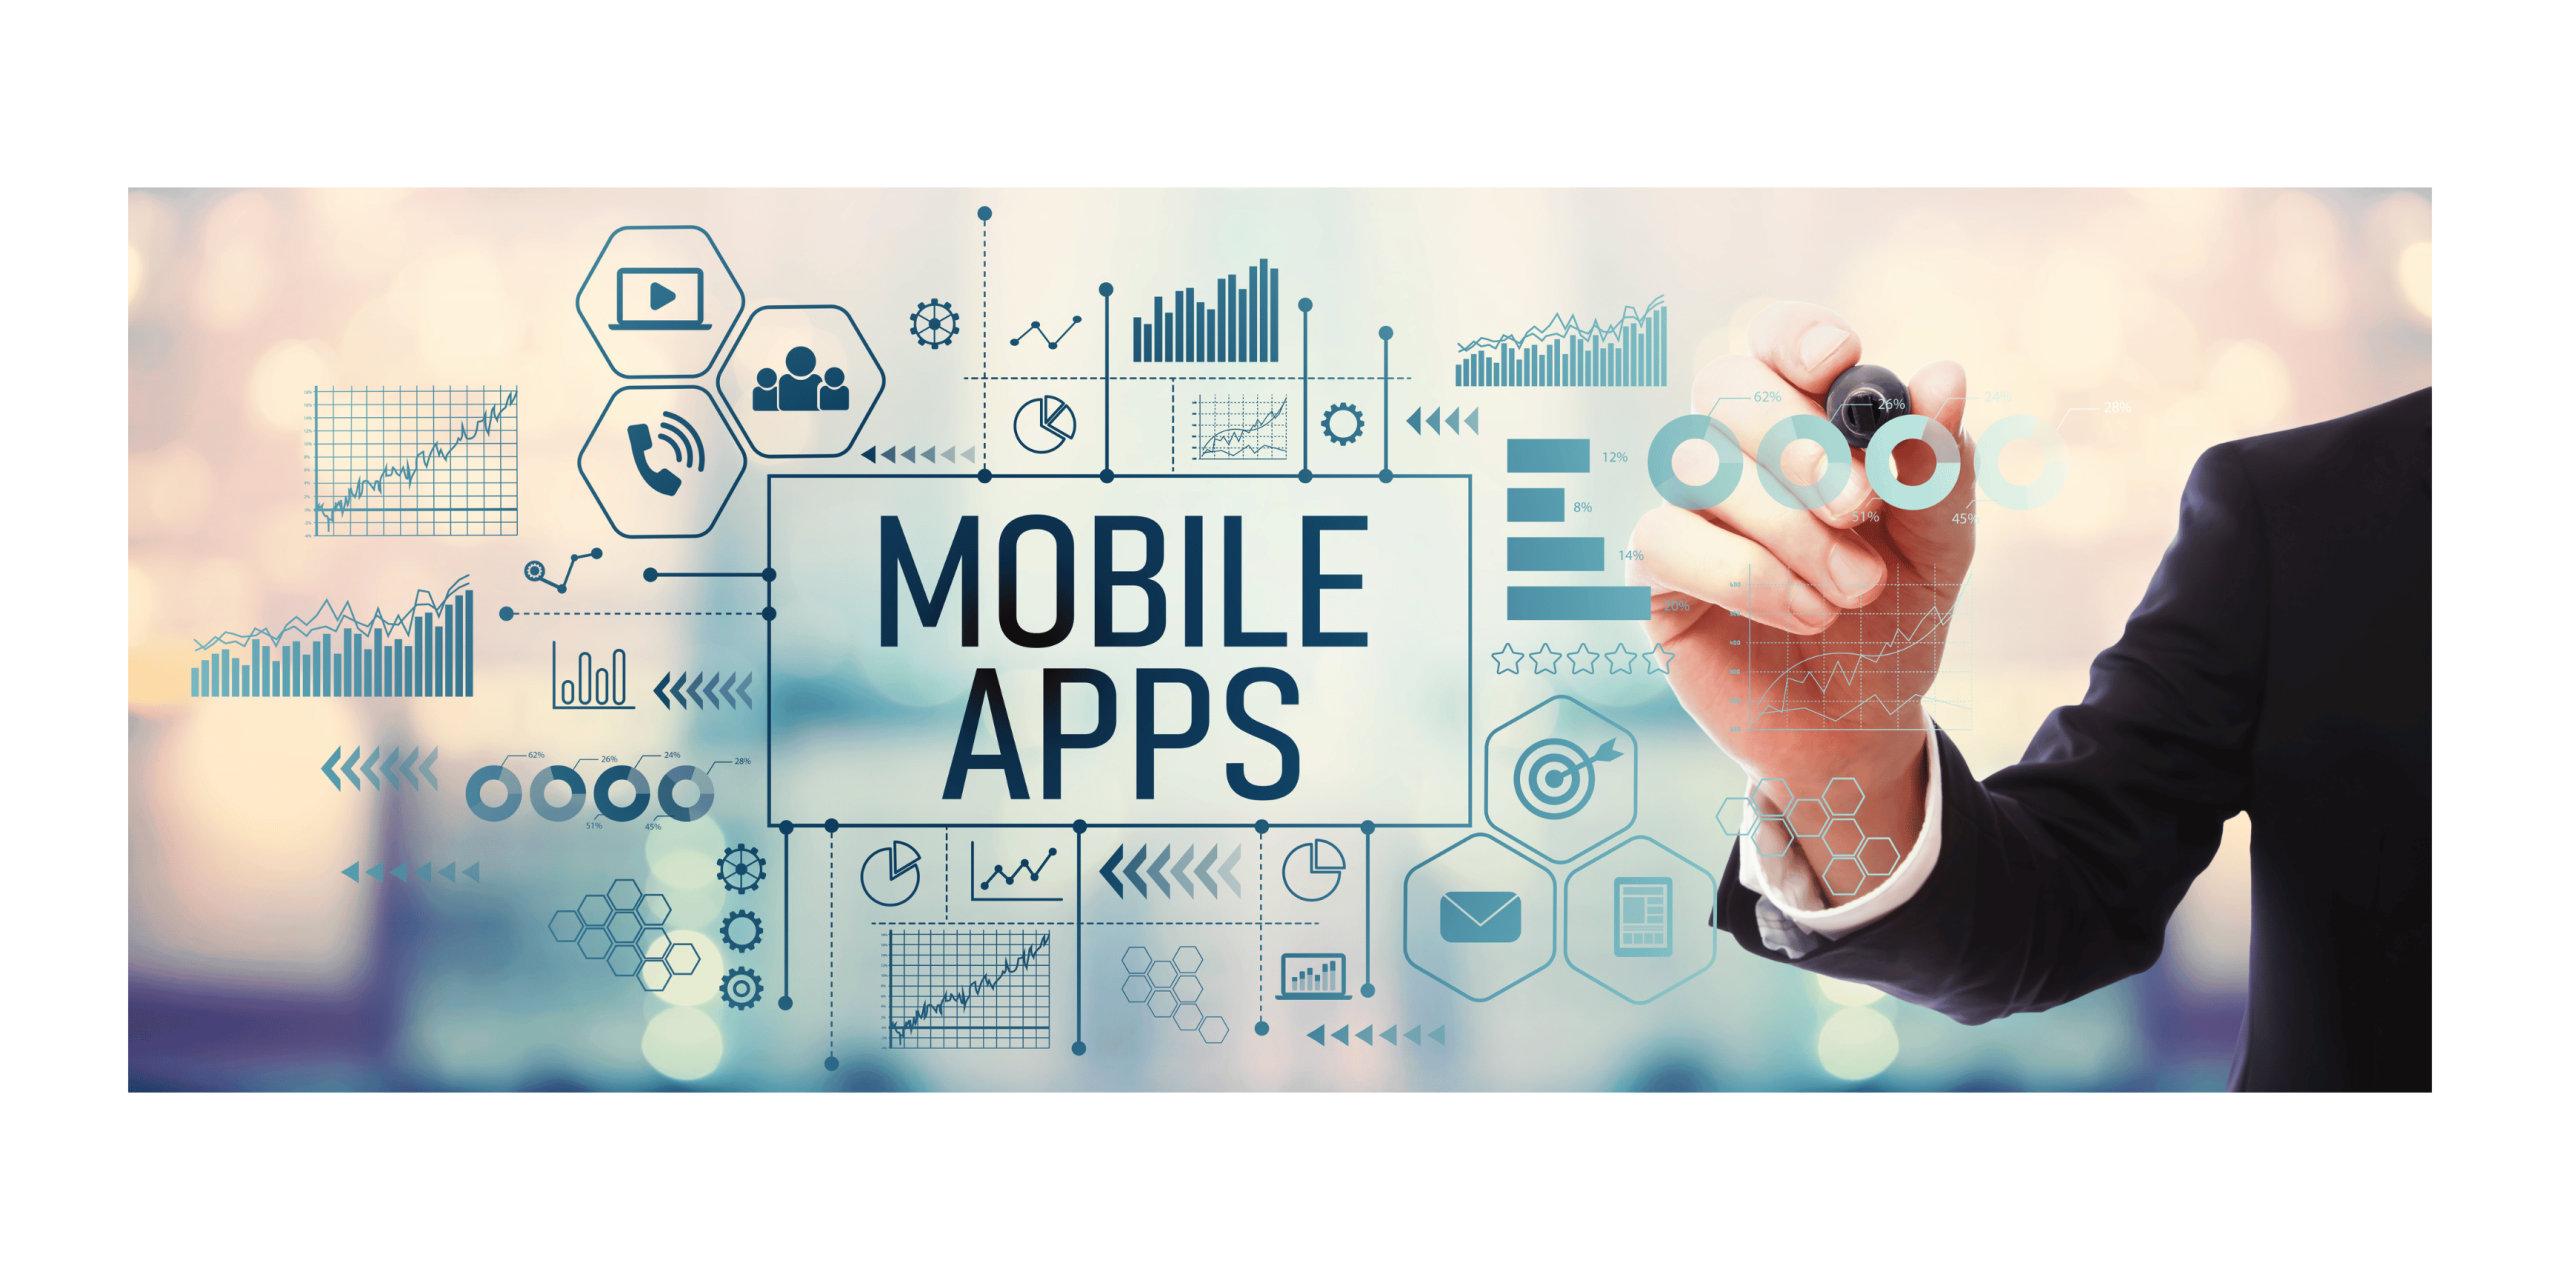 Future trends in mobile app development?